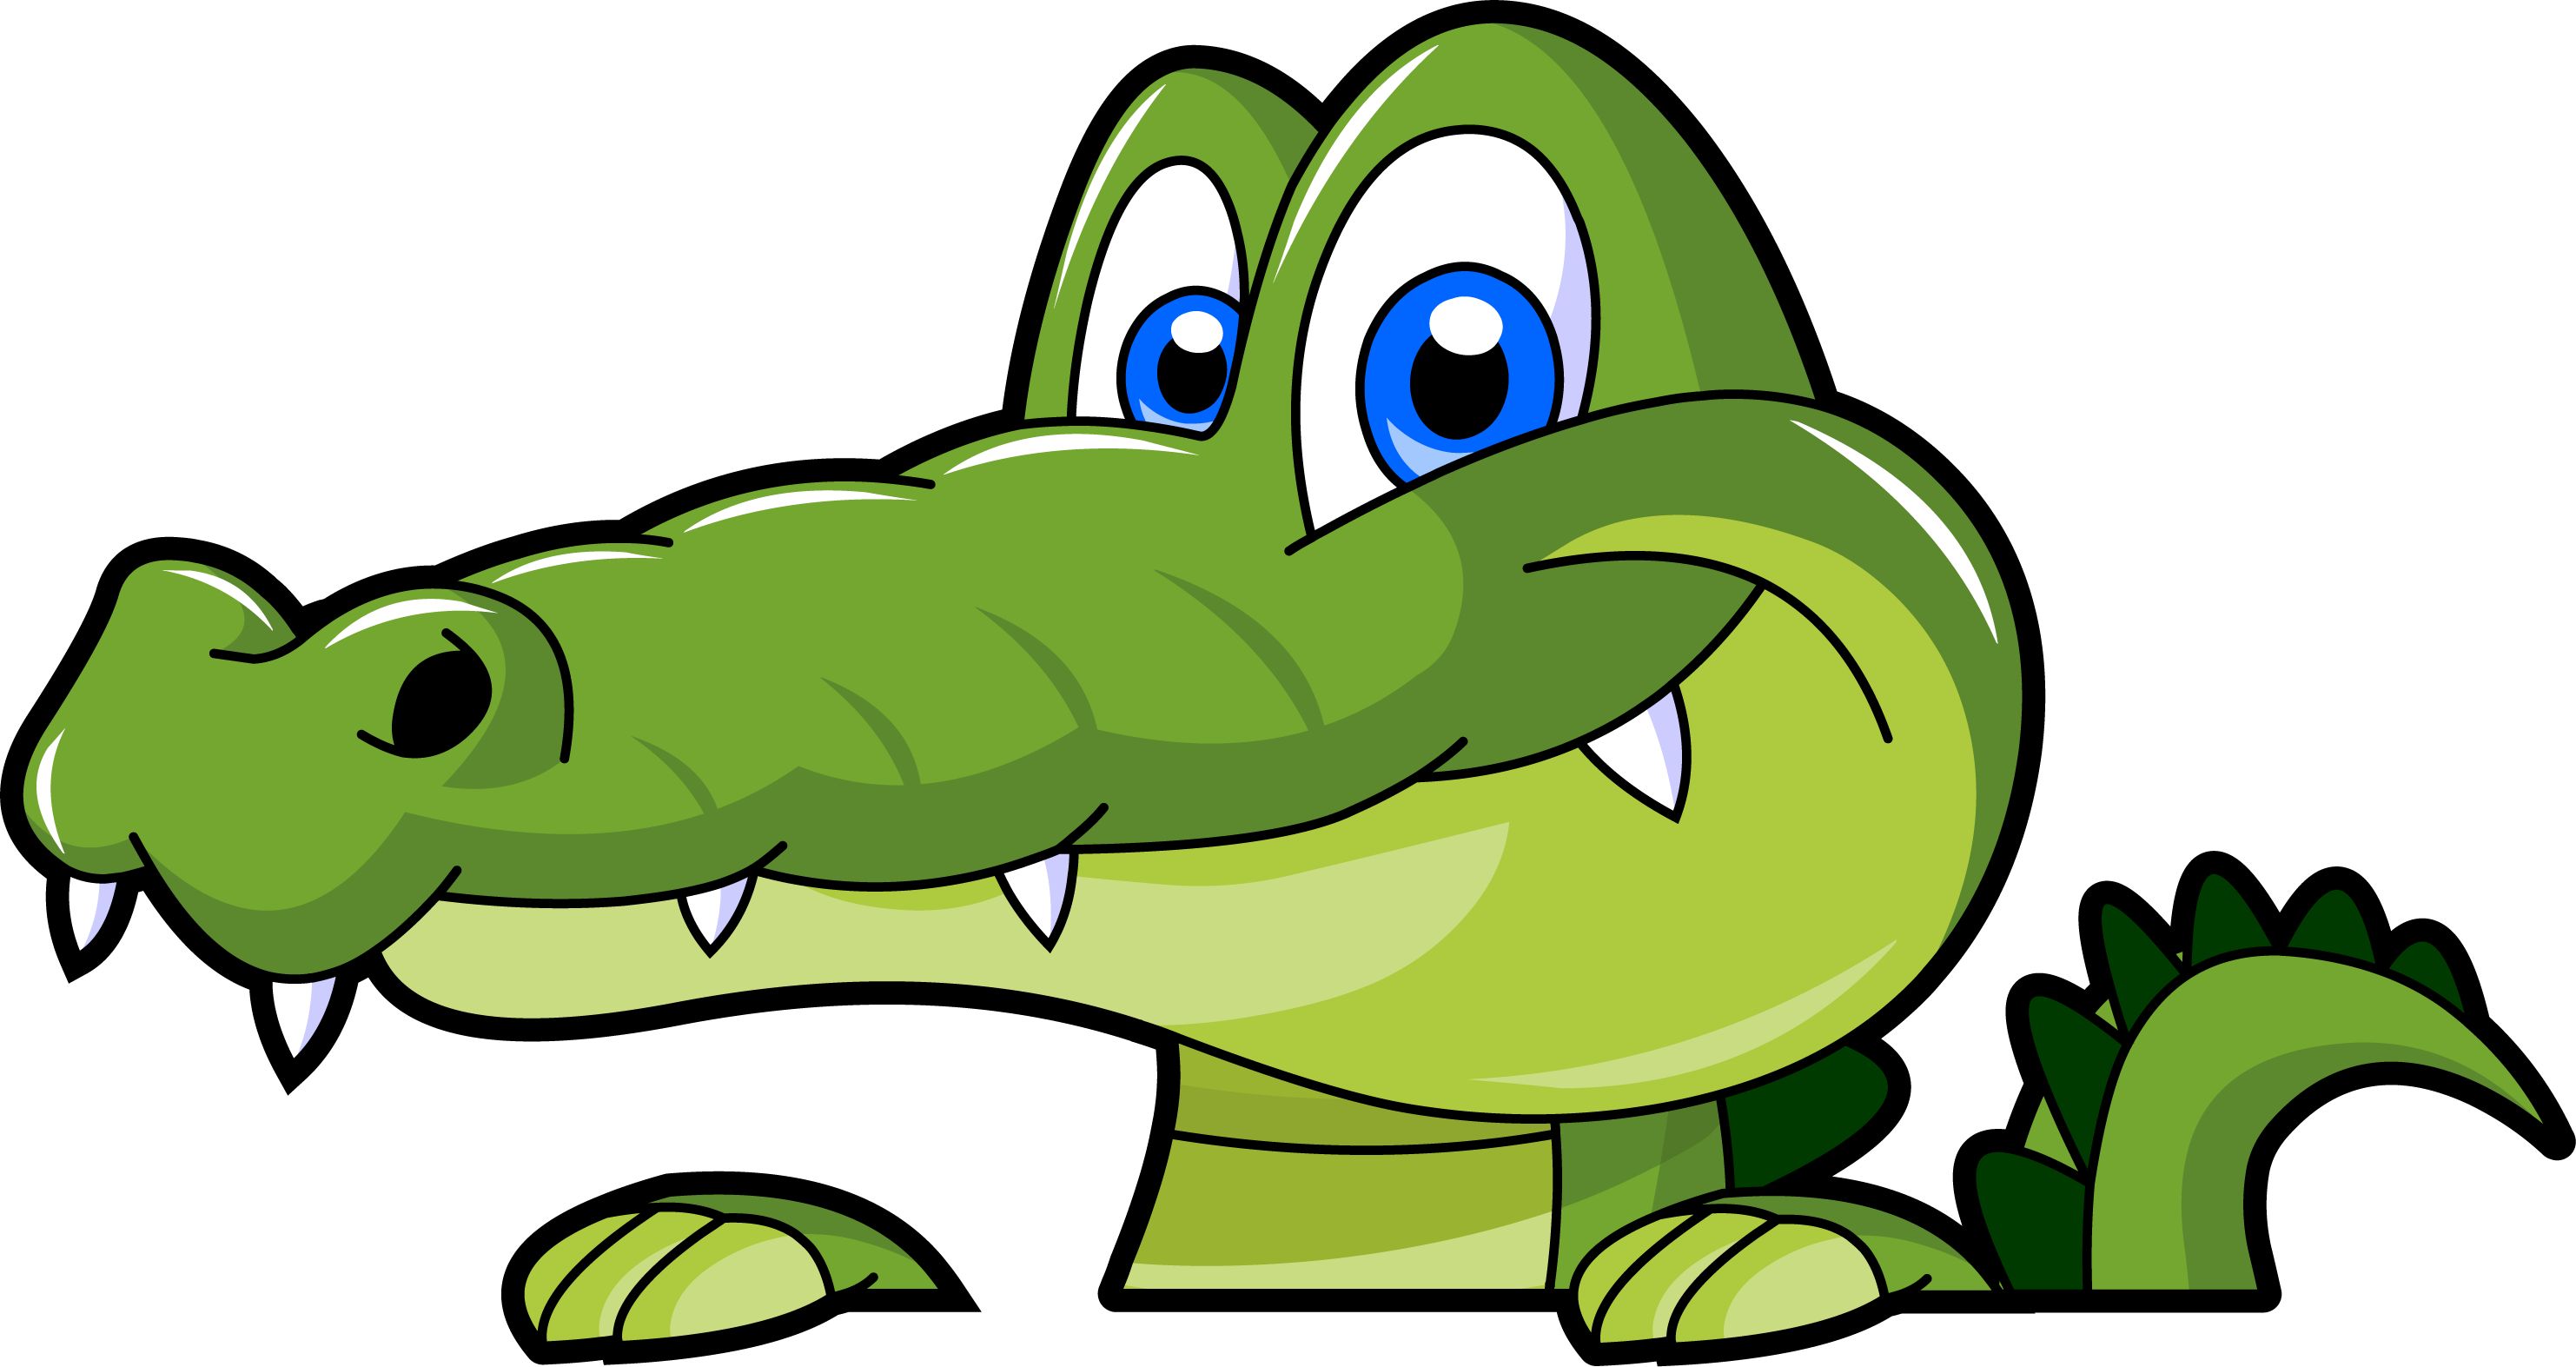 Funny alligator clip art ,crocodile picture